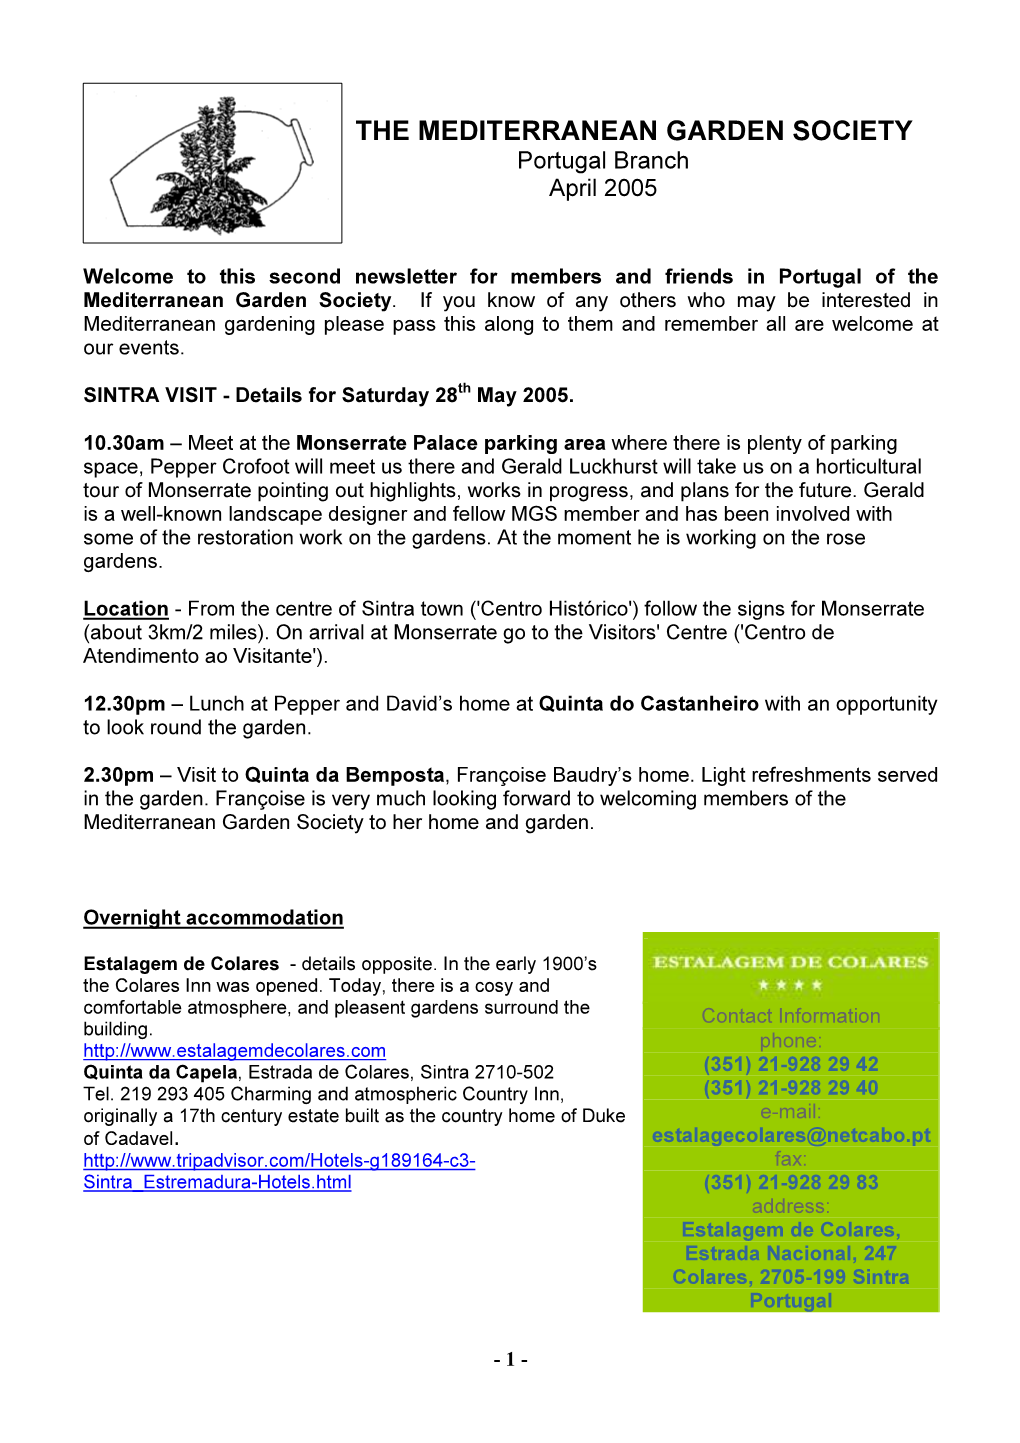 Newsletter No 2 April 2005